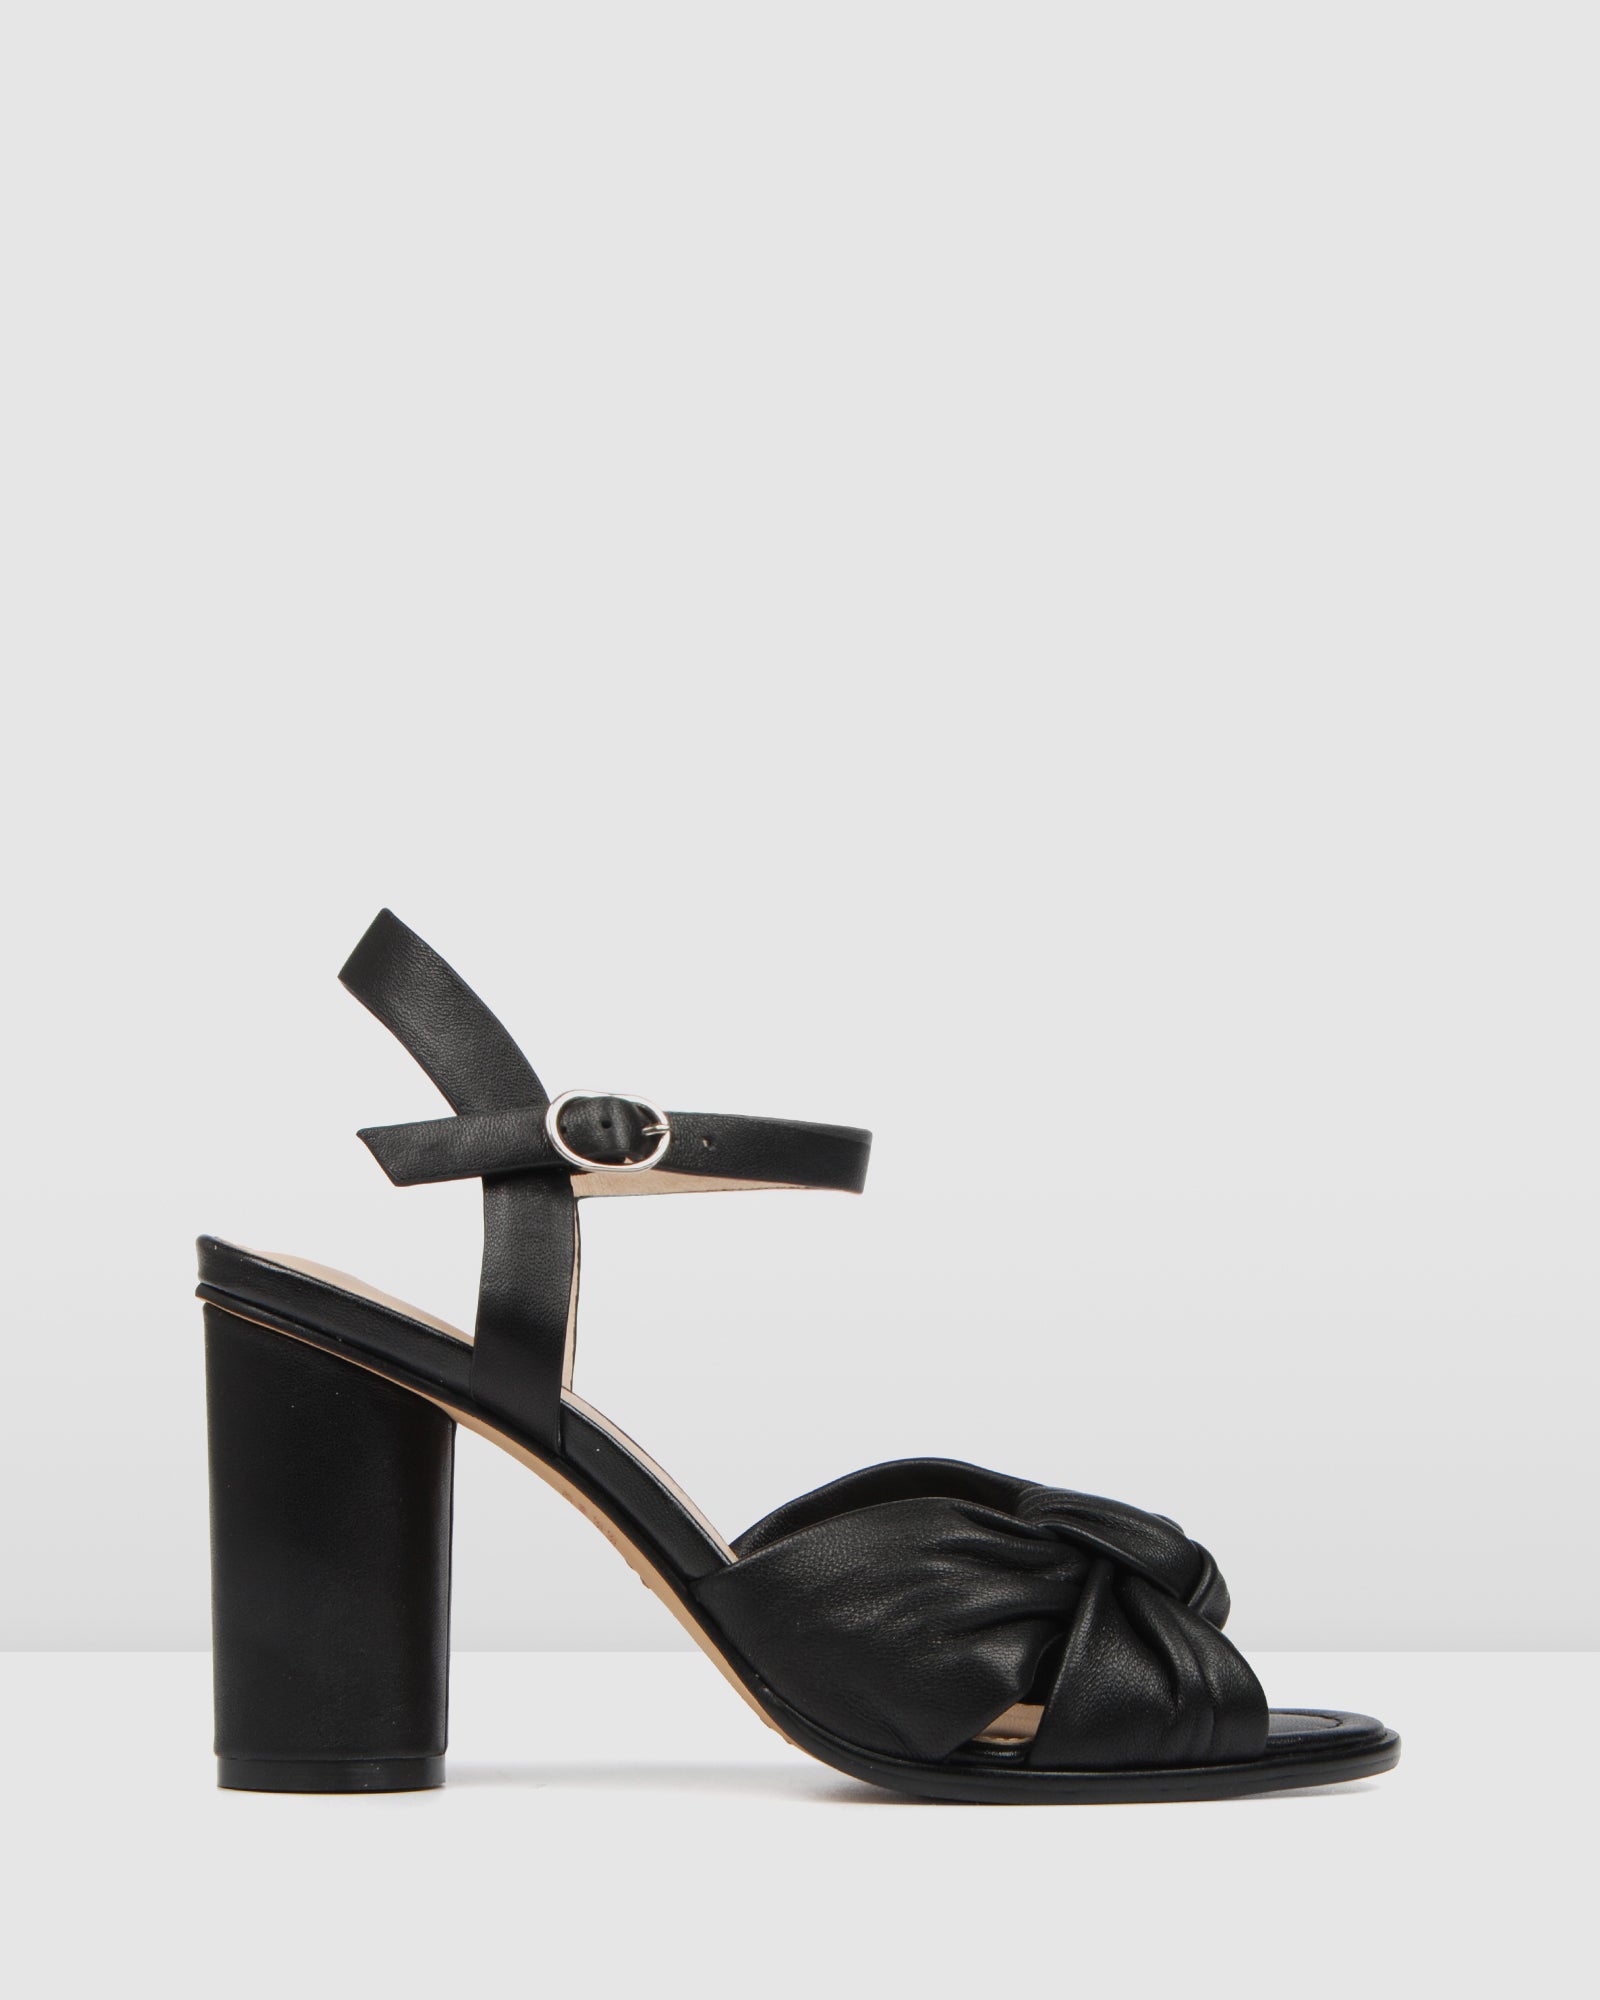 black leather sandal heels